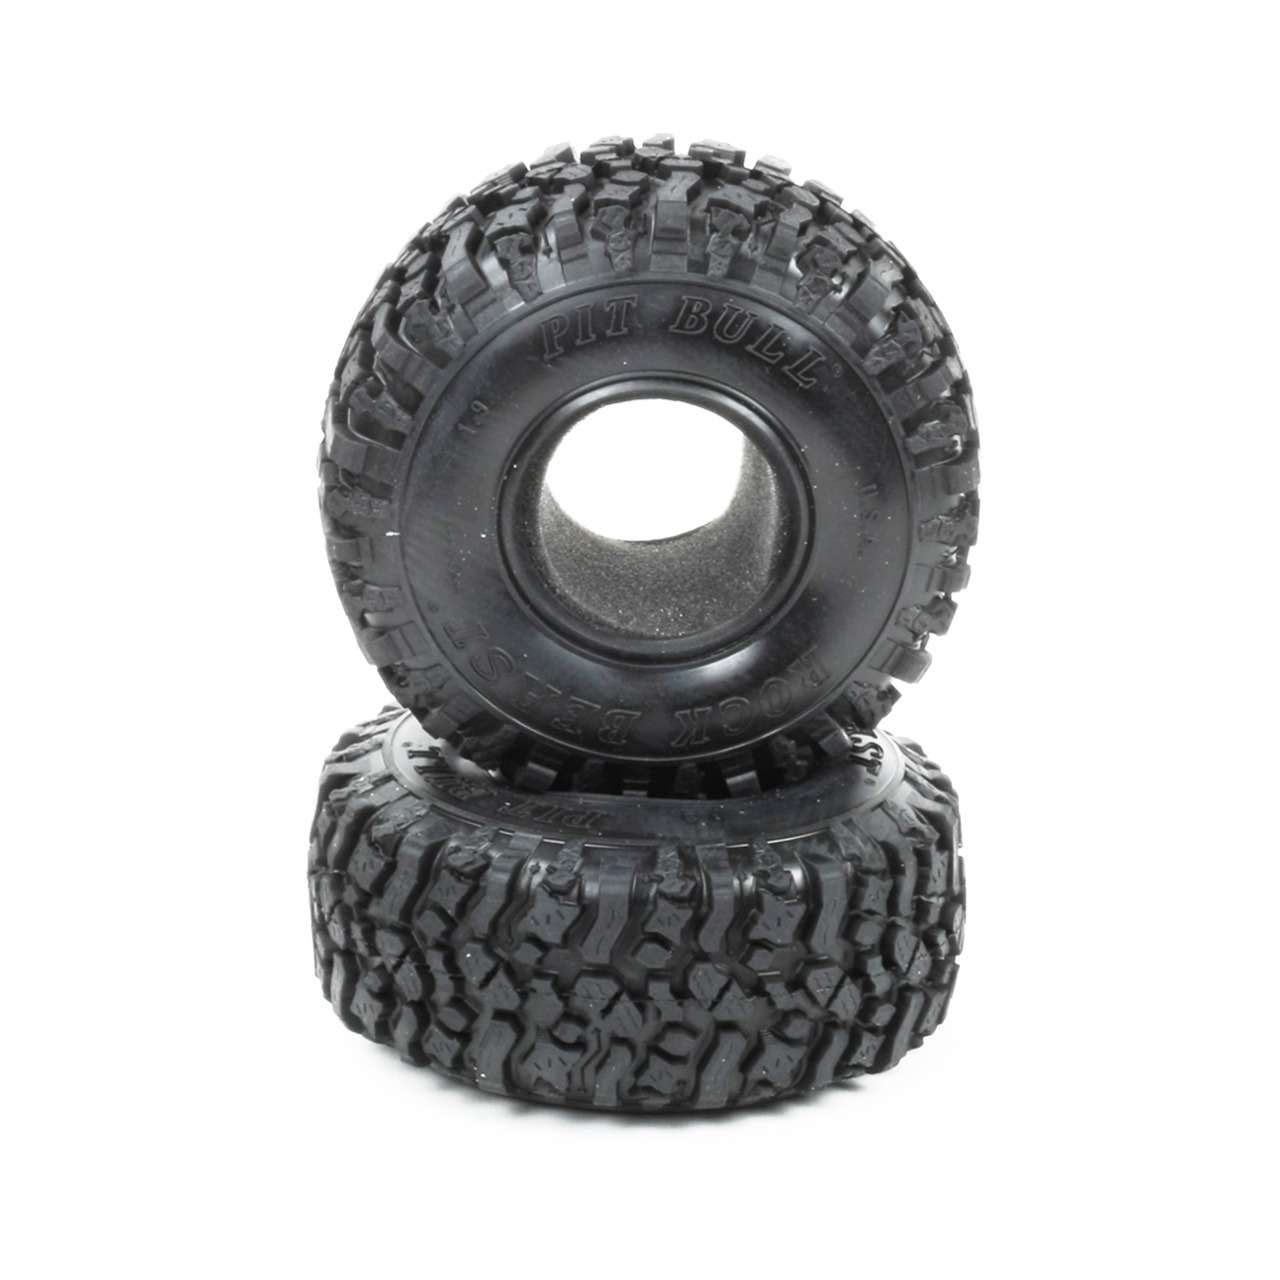 Neumáticos PitBull Rock Beast 1.9 Scale con incrustaciones (2 piezas)